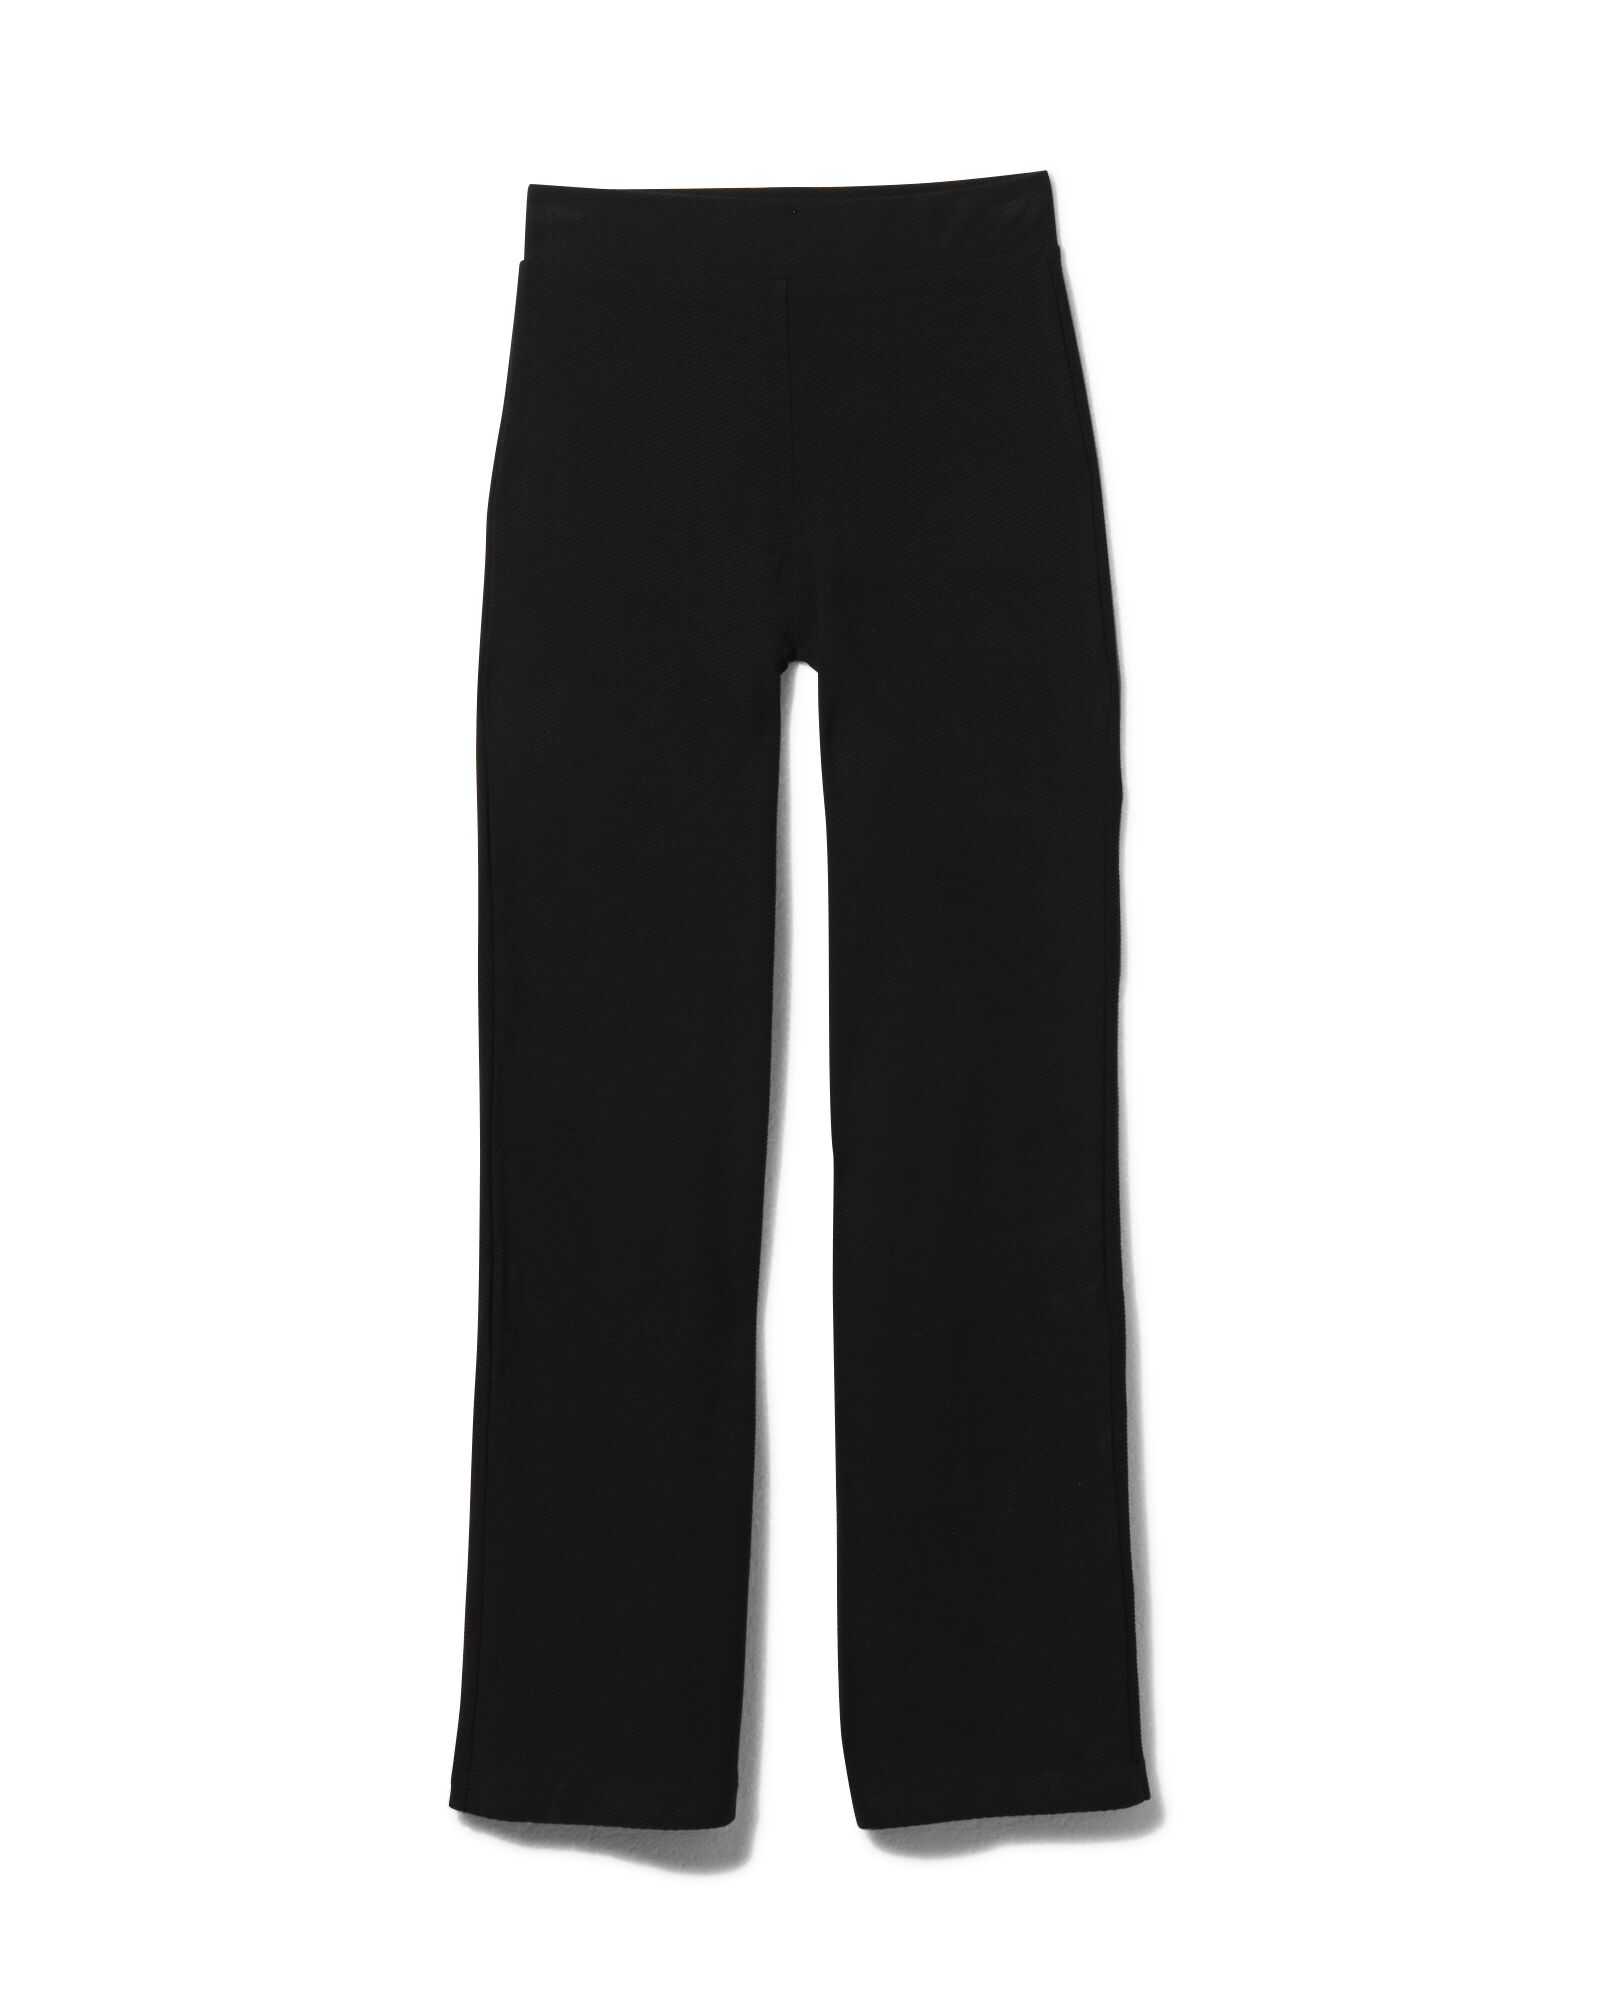 pantalon femme noir XL - 36218394 - HEMA